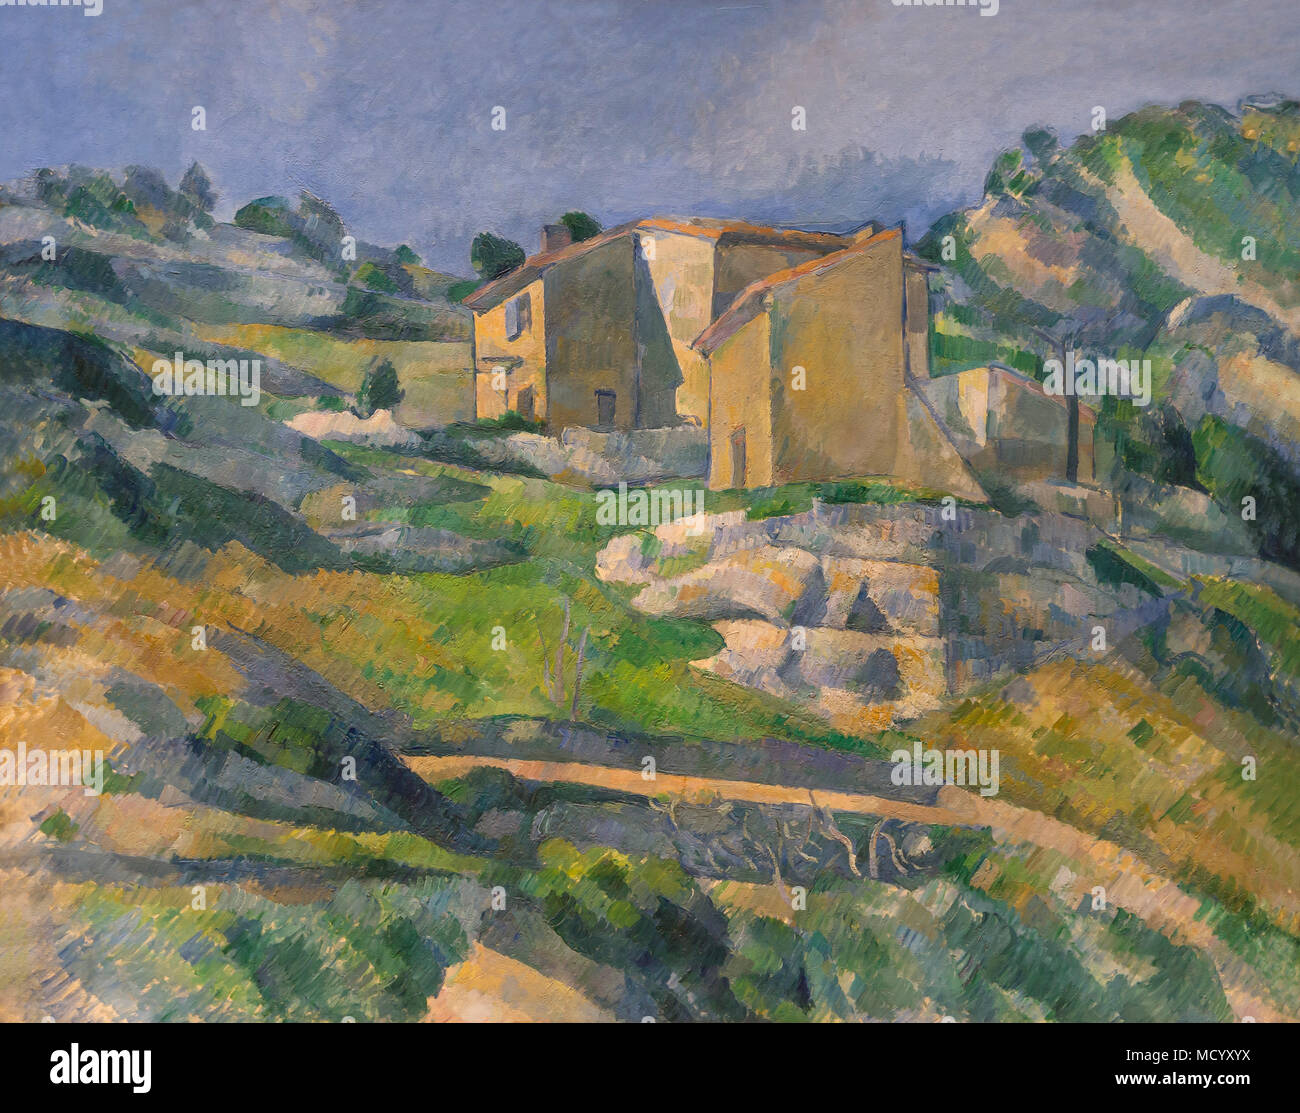 Maison en Provence, La Vallée de Riaux près de l'Estaque, Paul Cezanne, vers 1883, National Gallery of Art, Washington DC, USA, Amérique du Nord Banque D'Images